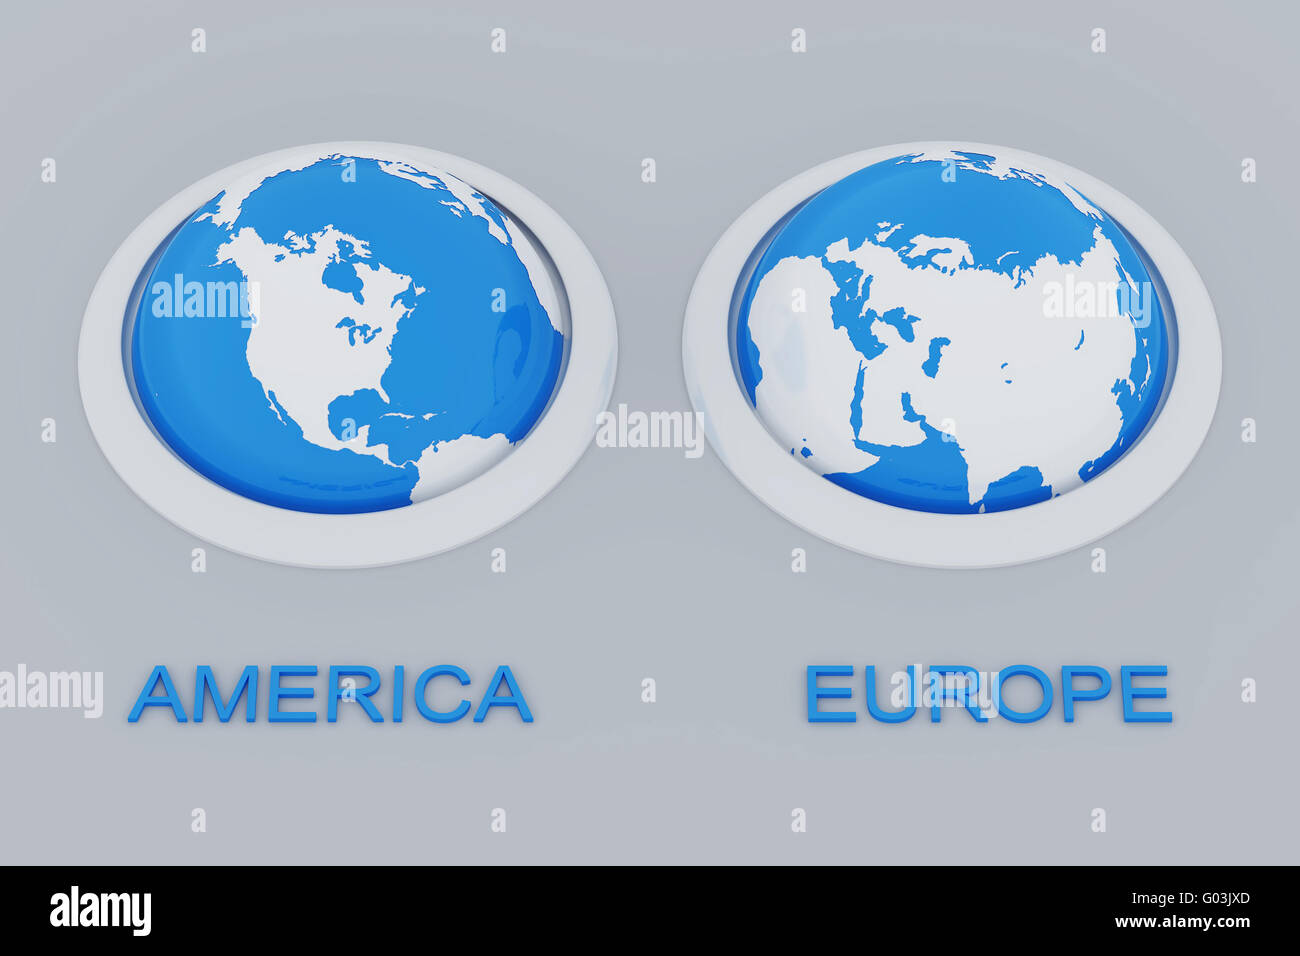 Domaines de la terre avec la coopération européenne et américaine Banque D'Images